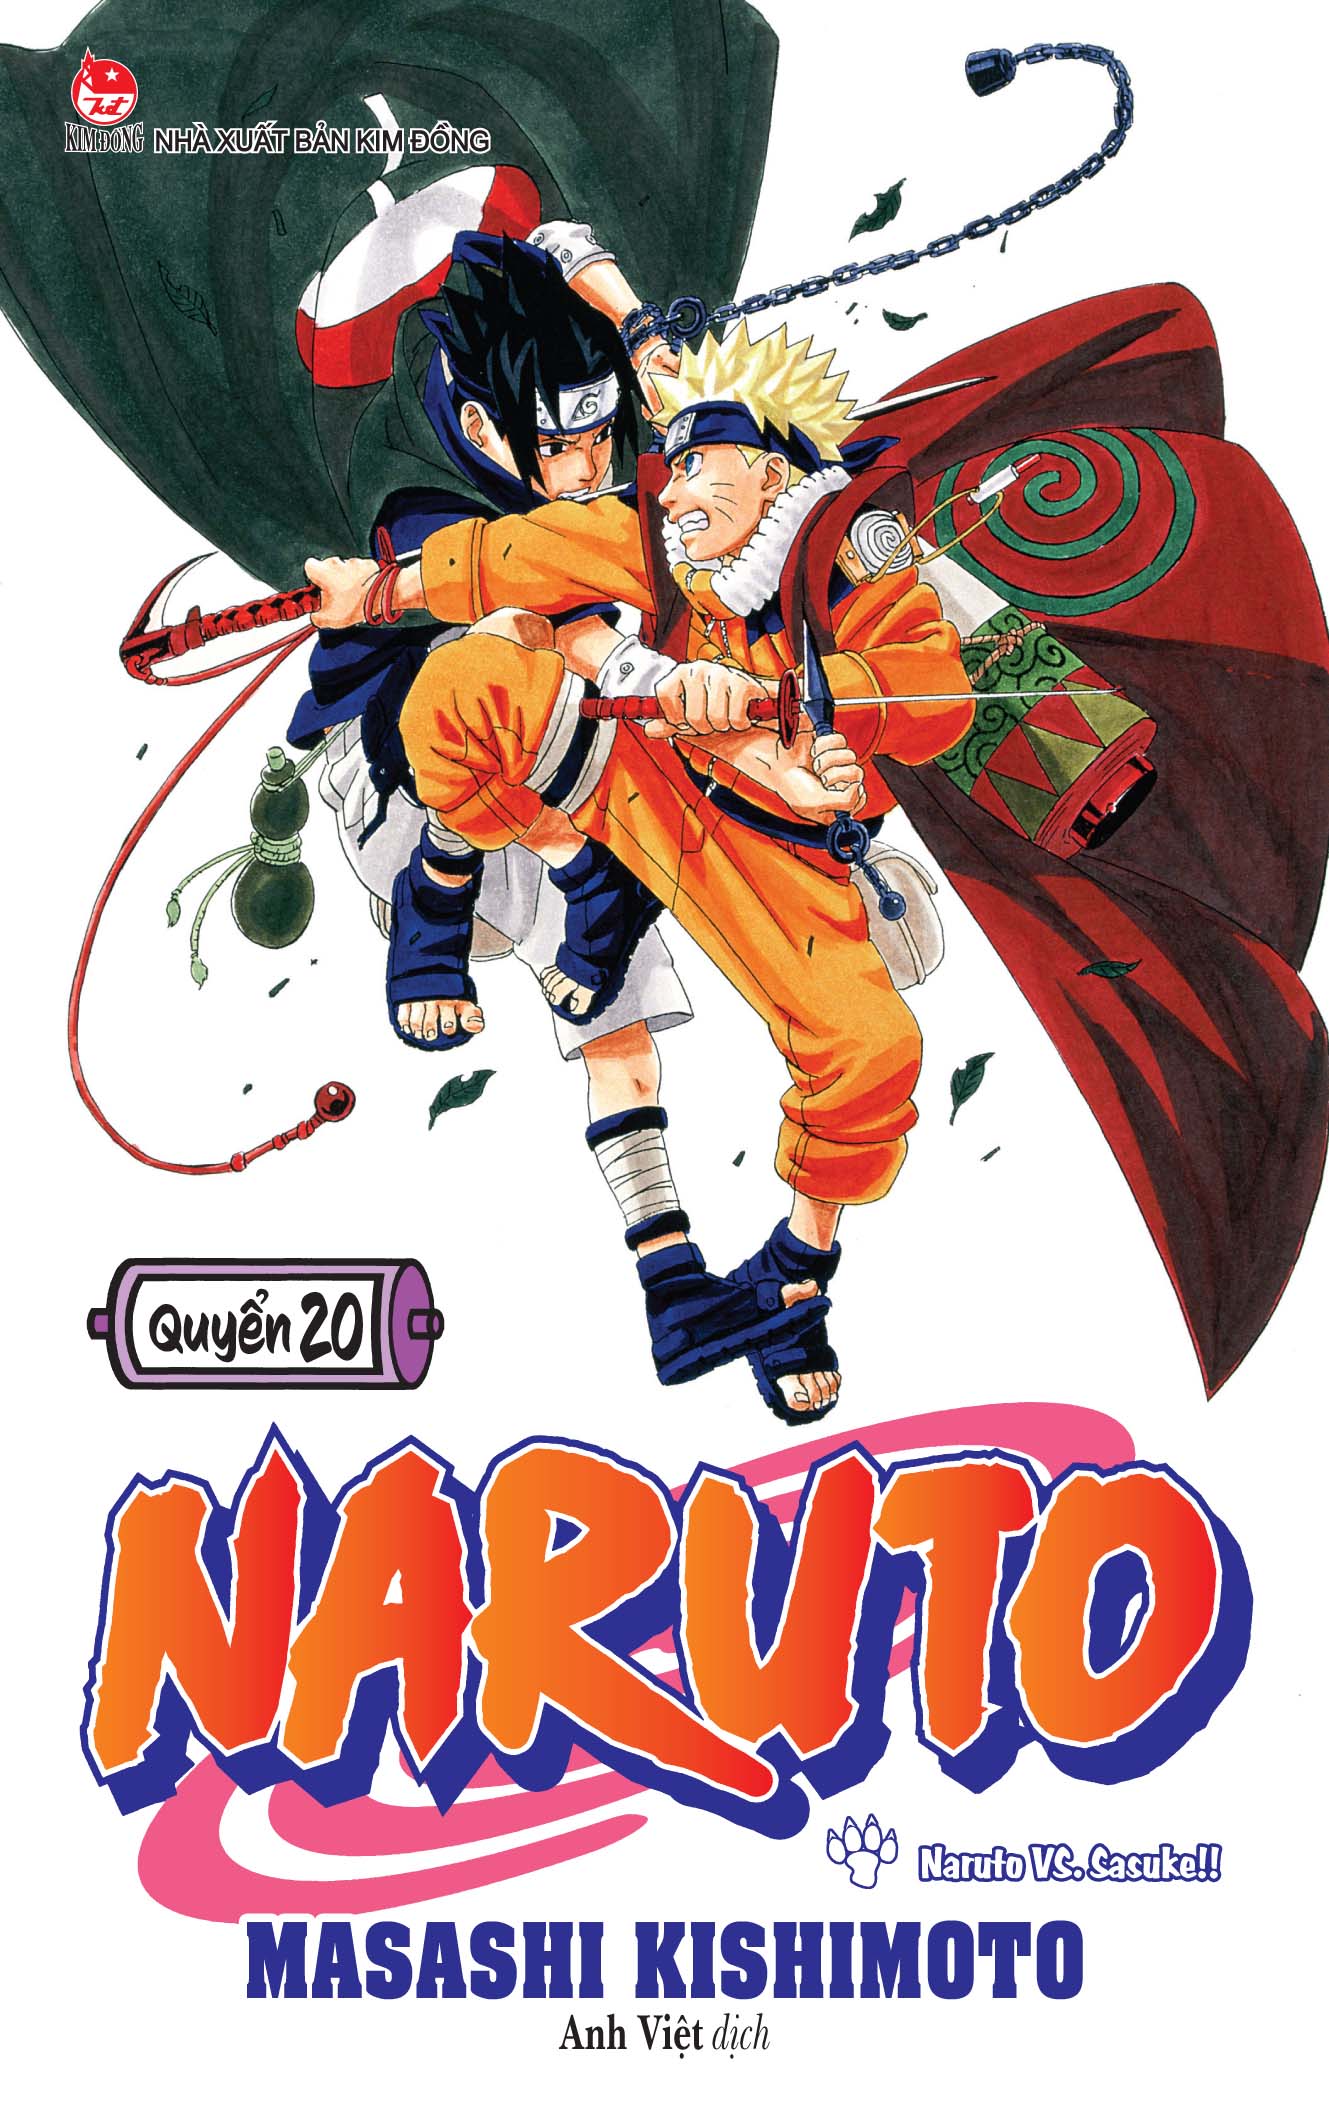 Hãy cùng chiêm ngưỡng bức ảnh Naruto và Sasuke đam mỹ đầy tình cảm và lãng mạn, khiến ai nhìn thấy cũng phải thổn thức và mơ mộng. Điểm qua các cử chỉ, nét mặt và ánh mắt của hai nhân vật, bạn sẽ cảm nhận được cảm xúc sâu sắc trong tình yêu của họ.